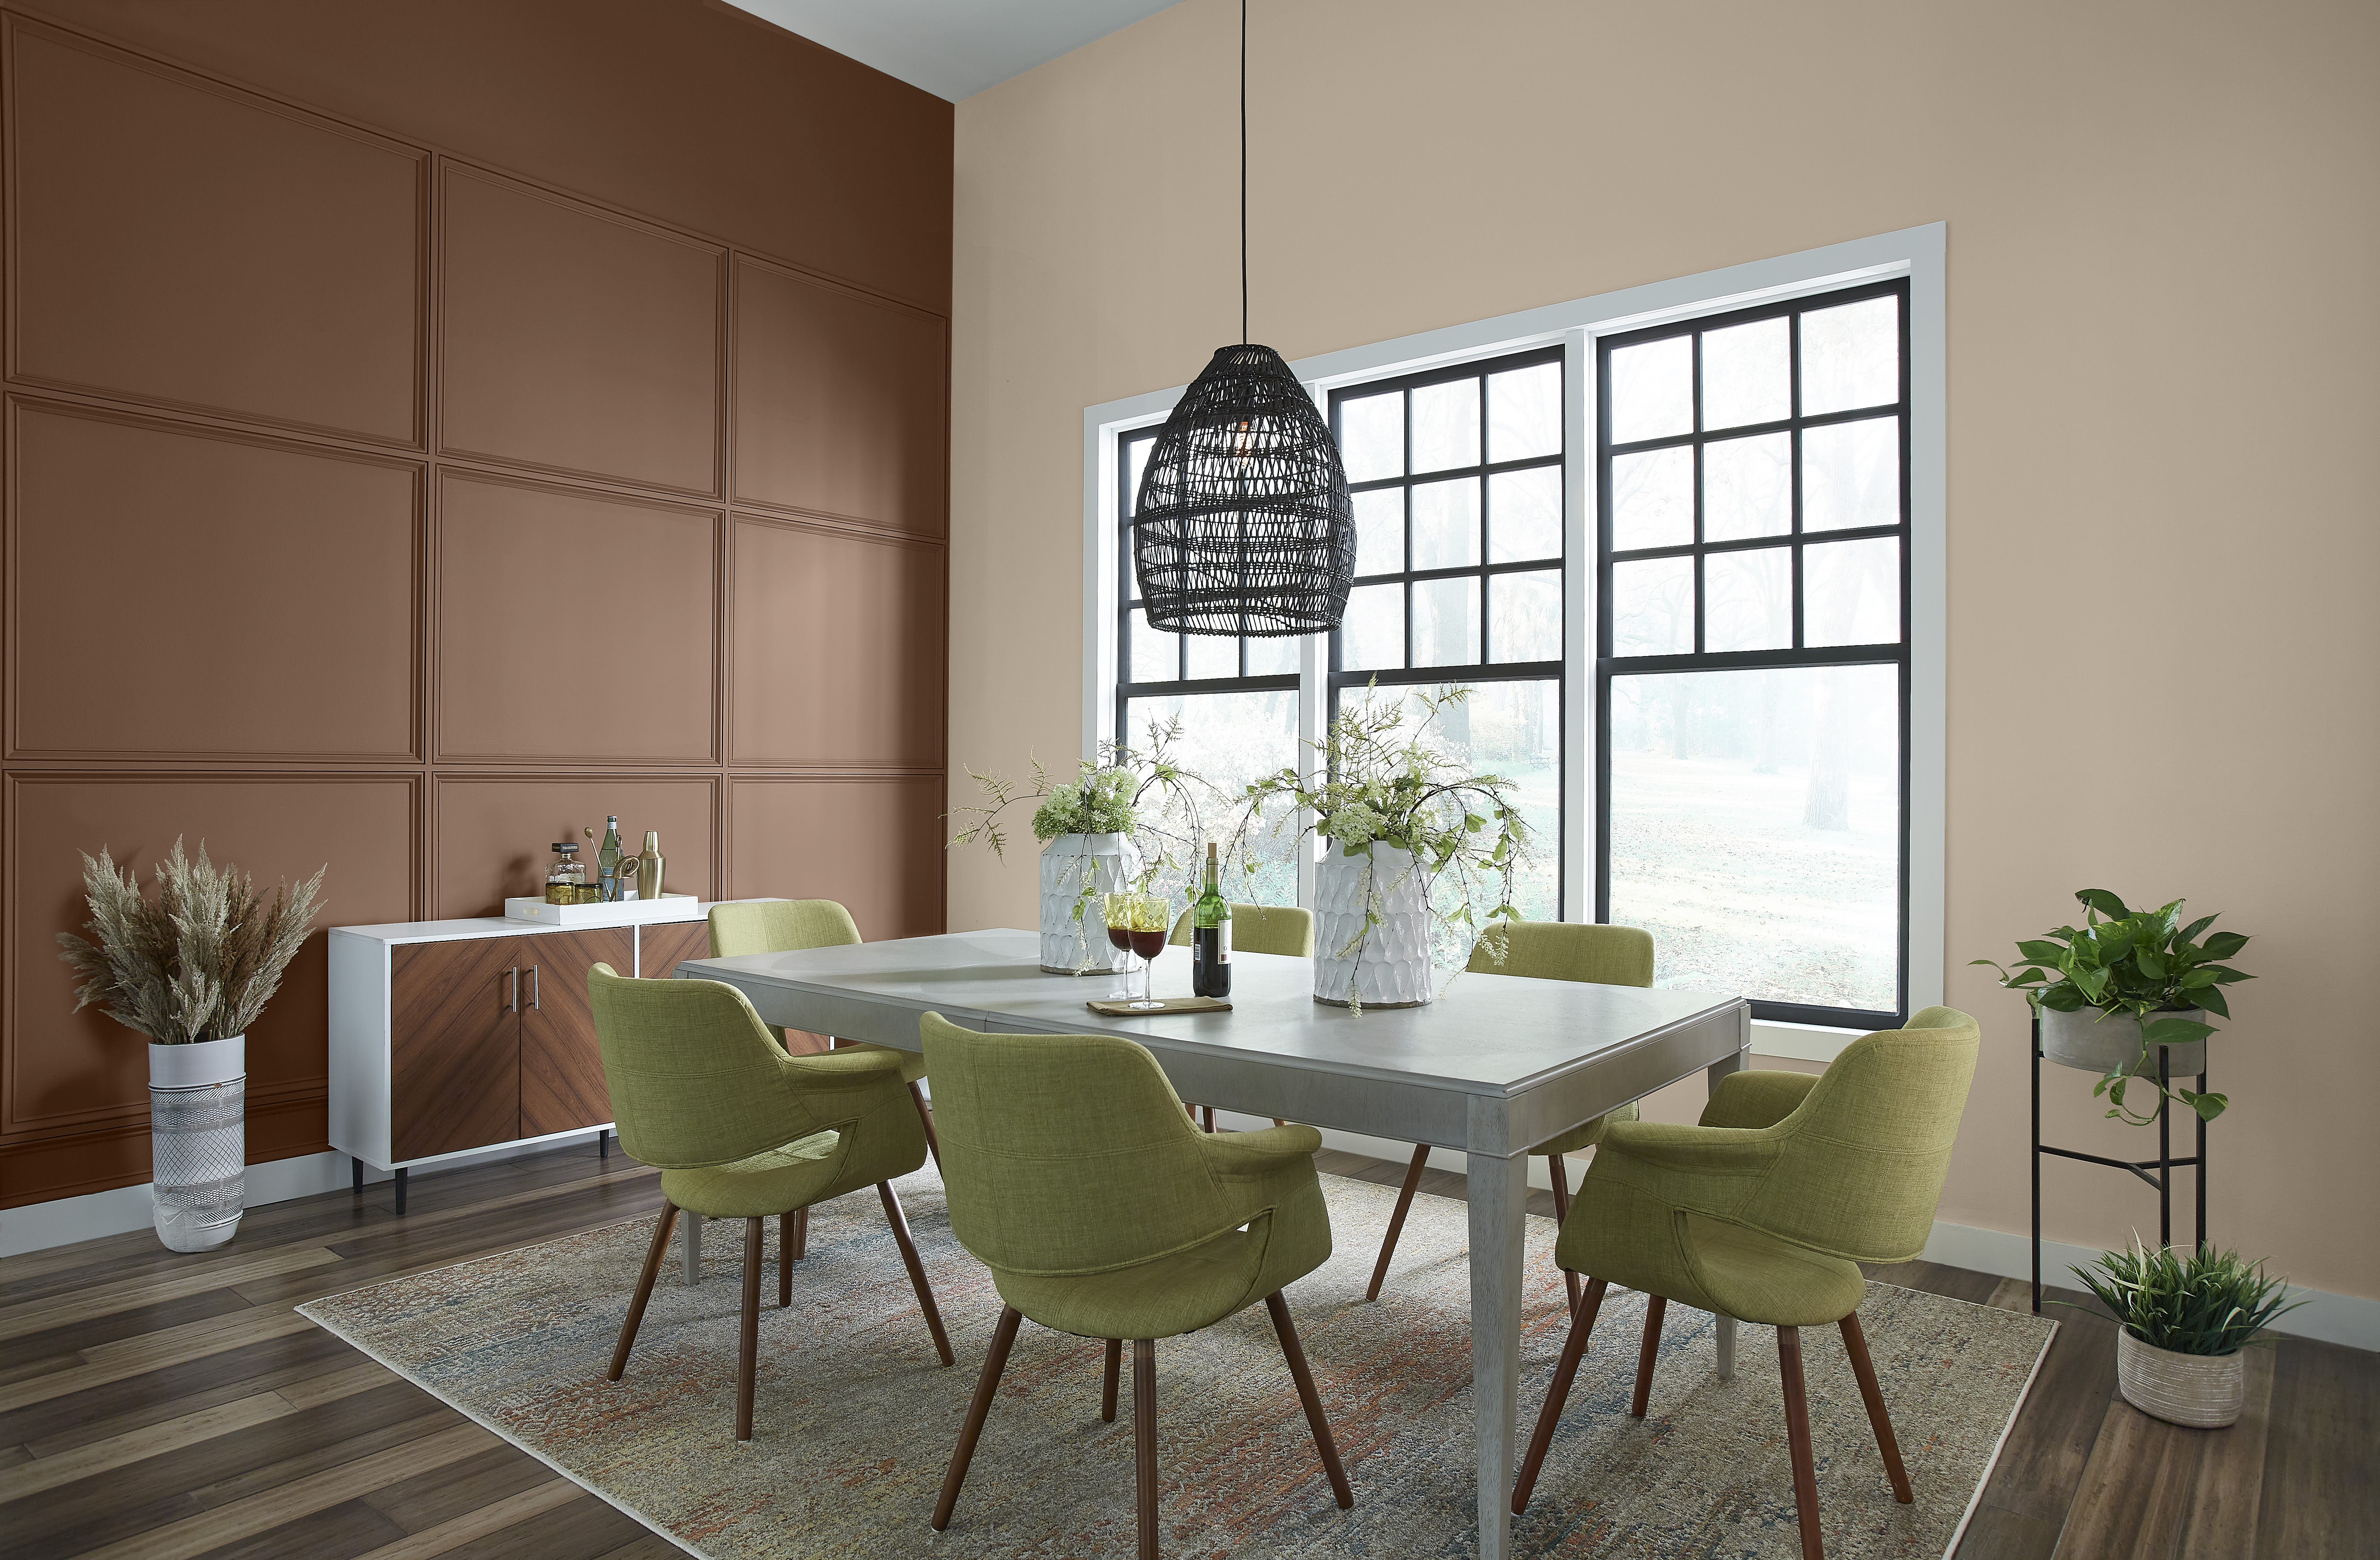 Une salle à manger éclectique avec une table moderne et des chaises rembourrées vertes. Un mur d'accent est peint avec une couleur brune appelée Mustang sauvage.